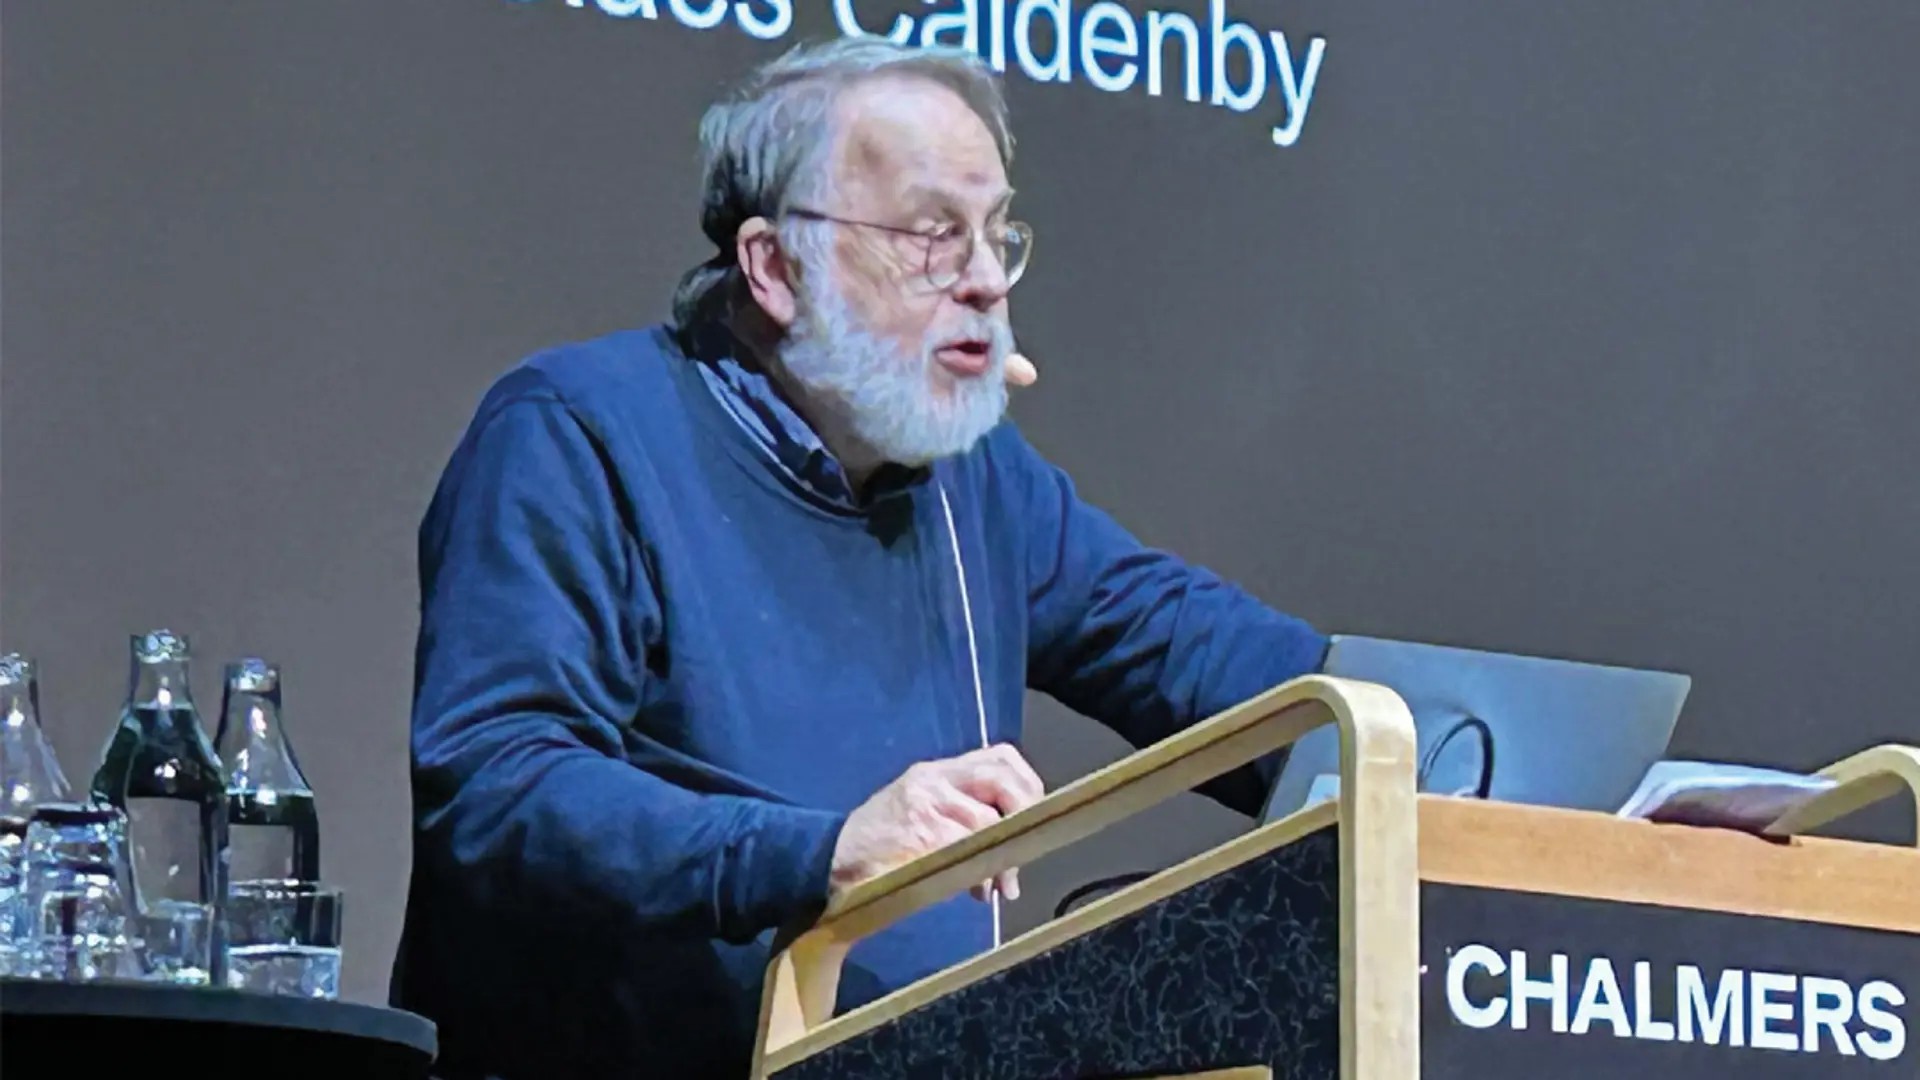 Professor emeritus Claes Caldenby